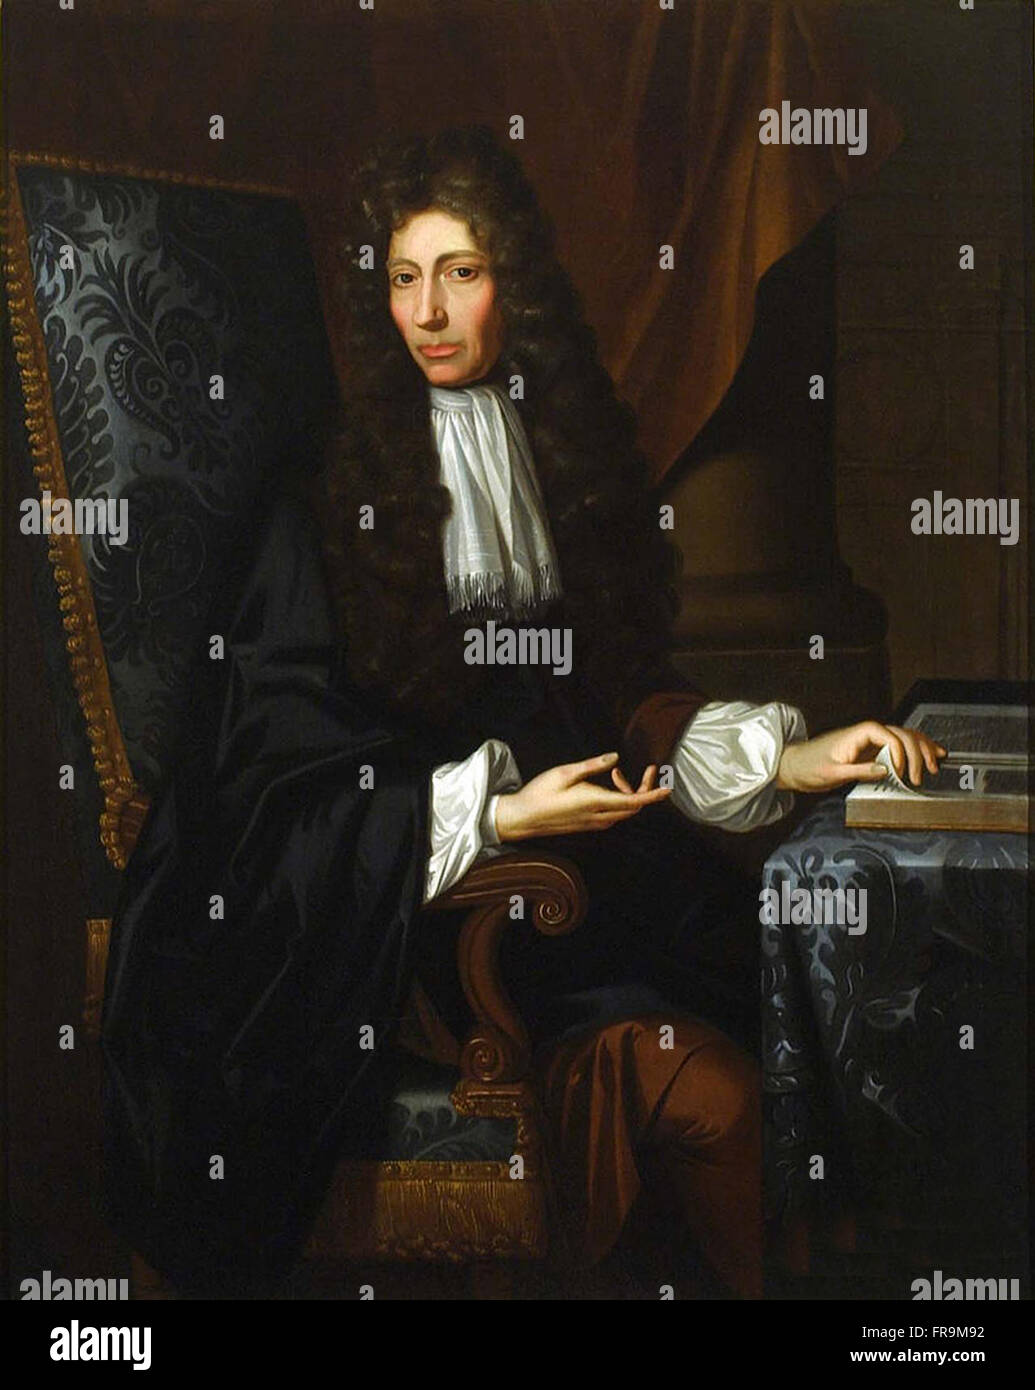 Un 1689 olio su tela ritratto di Robert Boyle. Robert William Boyle (25 gennaio 1627 - 31 dicembre 1691) era un anglo-irlandese filosofo naturale, chimico, fisico e inventore nato in Irlanda. Boyle è ampiamente considerata oggi come il primo moderno chimico, e quindi uno dei fondatori della chimica moderna e uno dei pionieri della moderna sperimentale metodo scientifico. Foto Stock